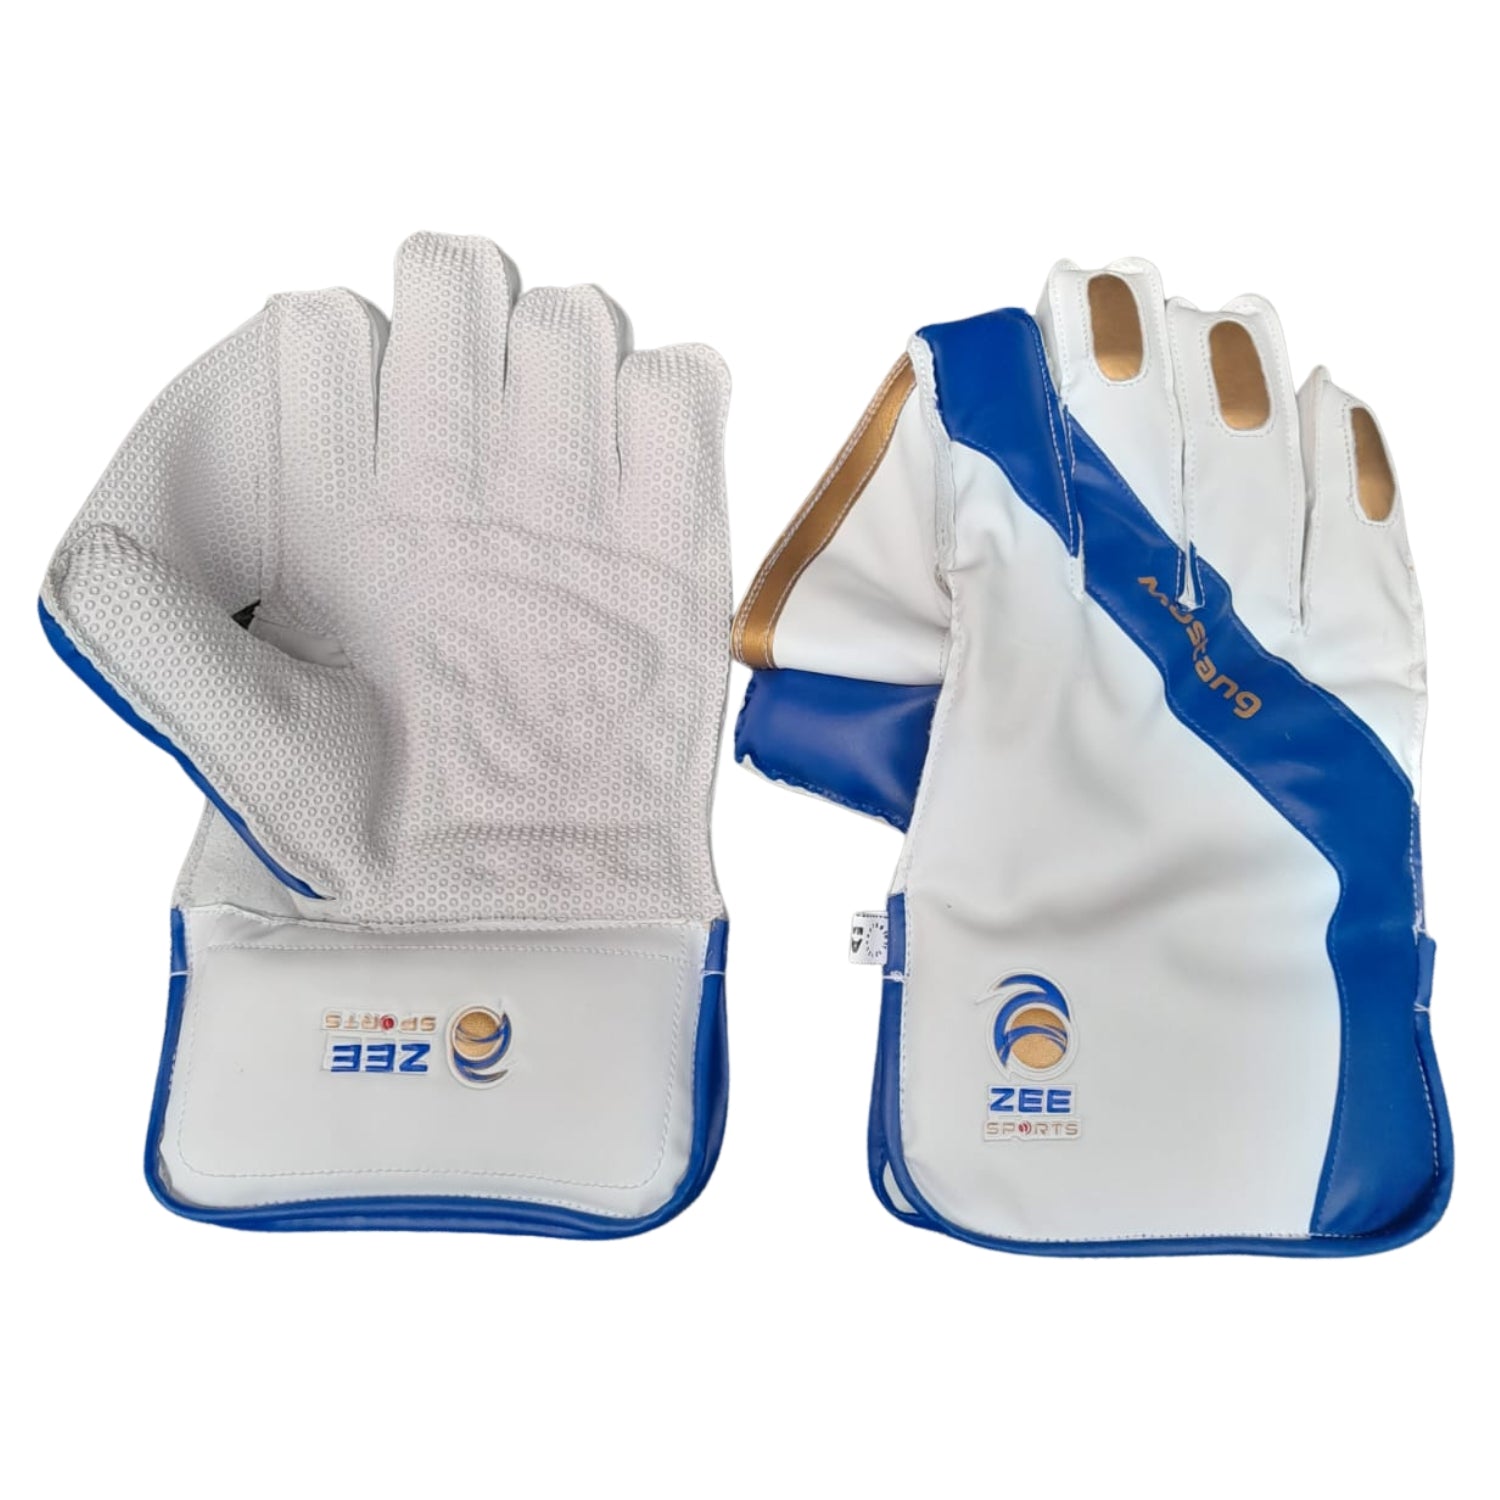 Zee Sports Wicket Keeping Gloves, Model Mustang 3-Star, Adult